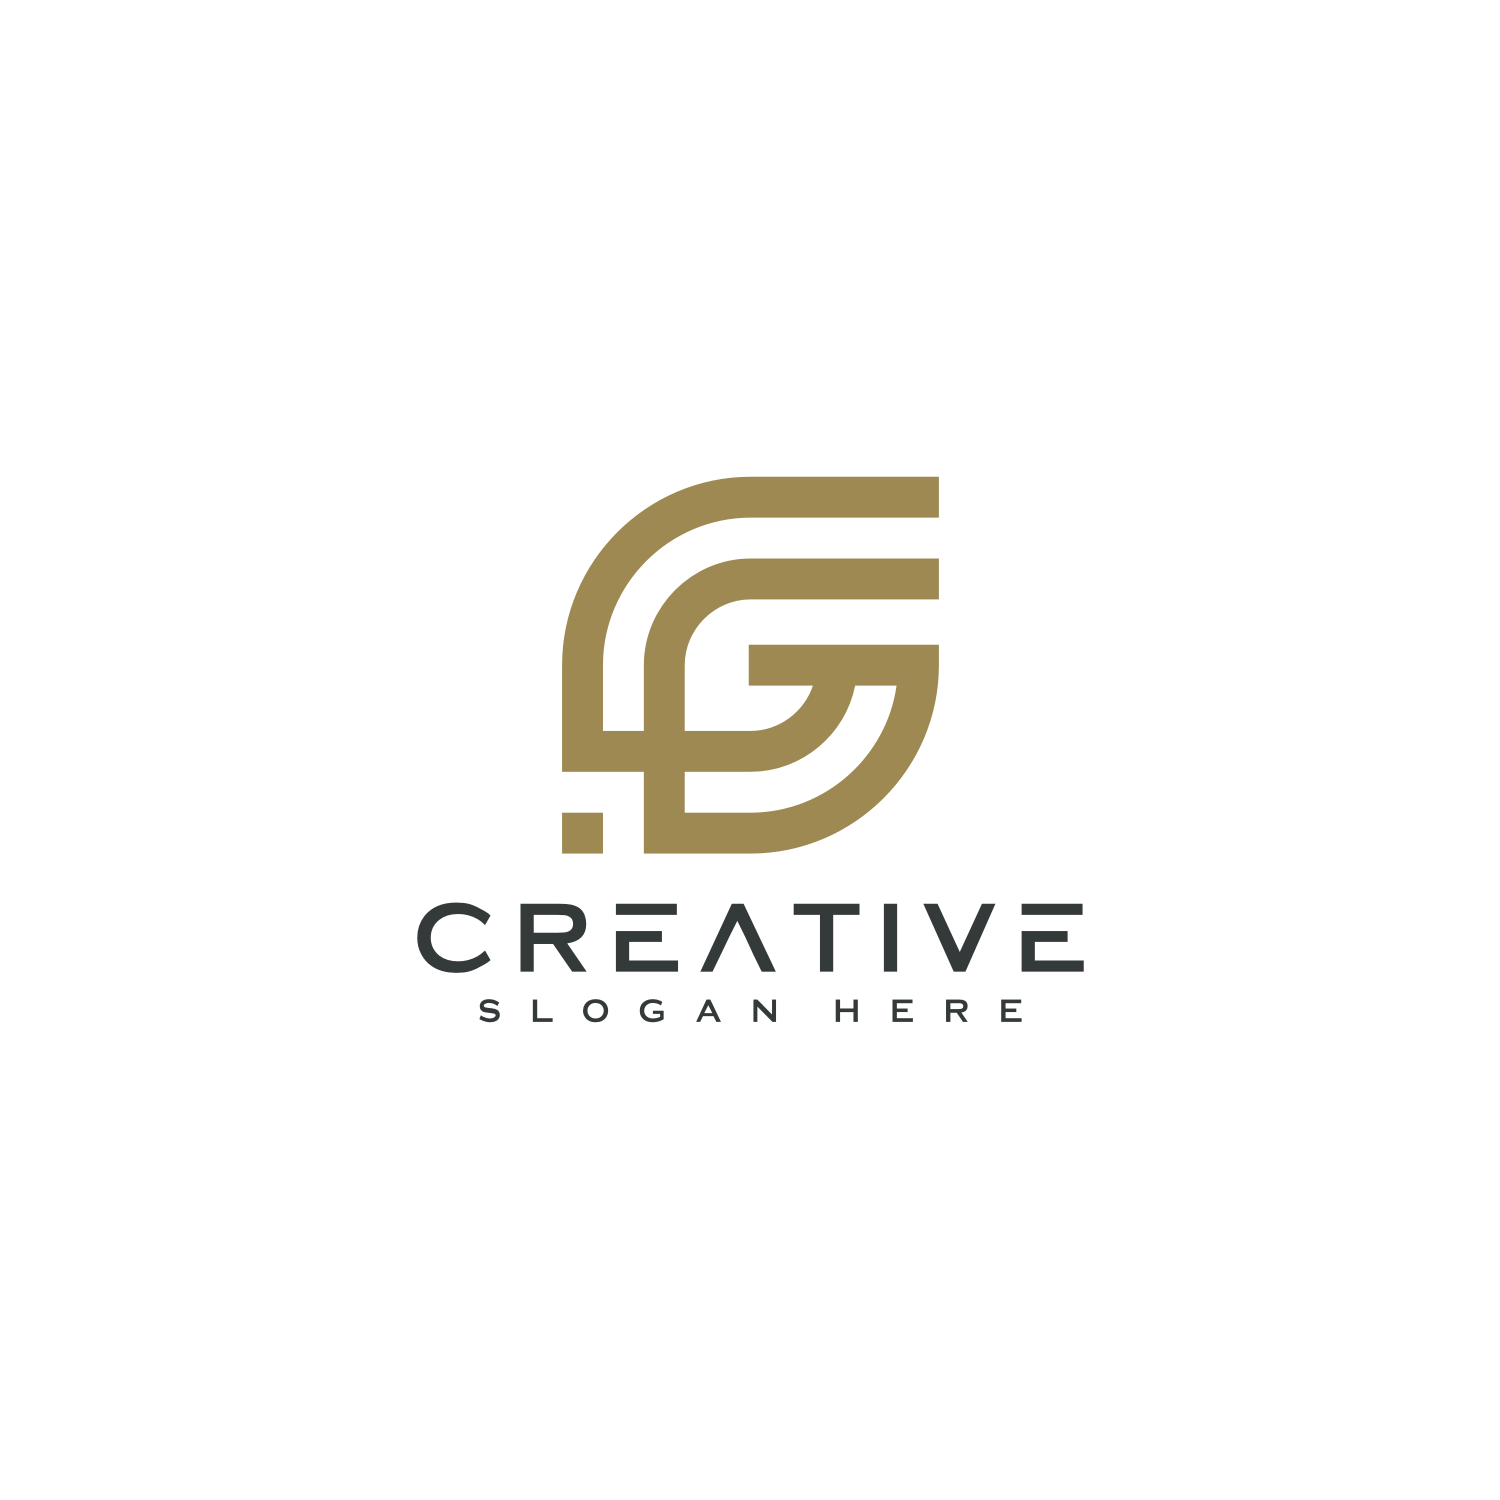 g letter design logo